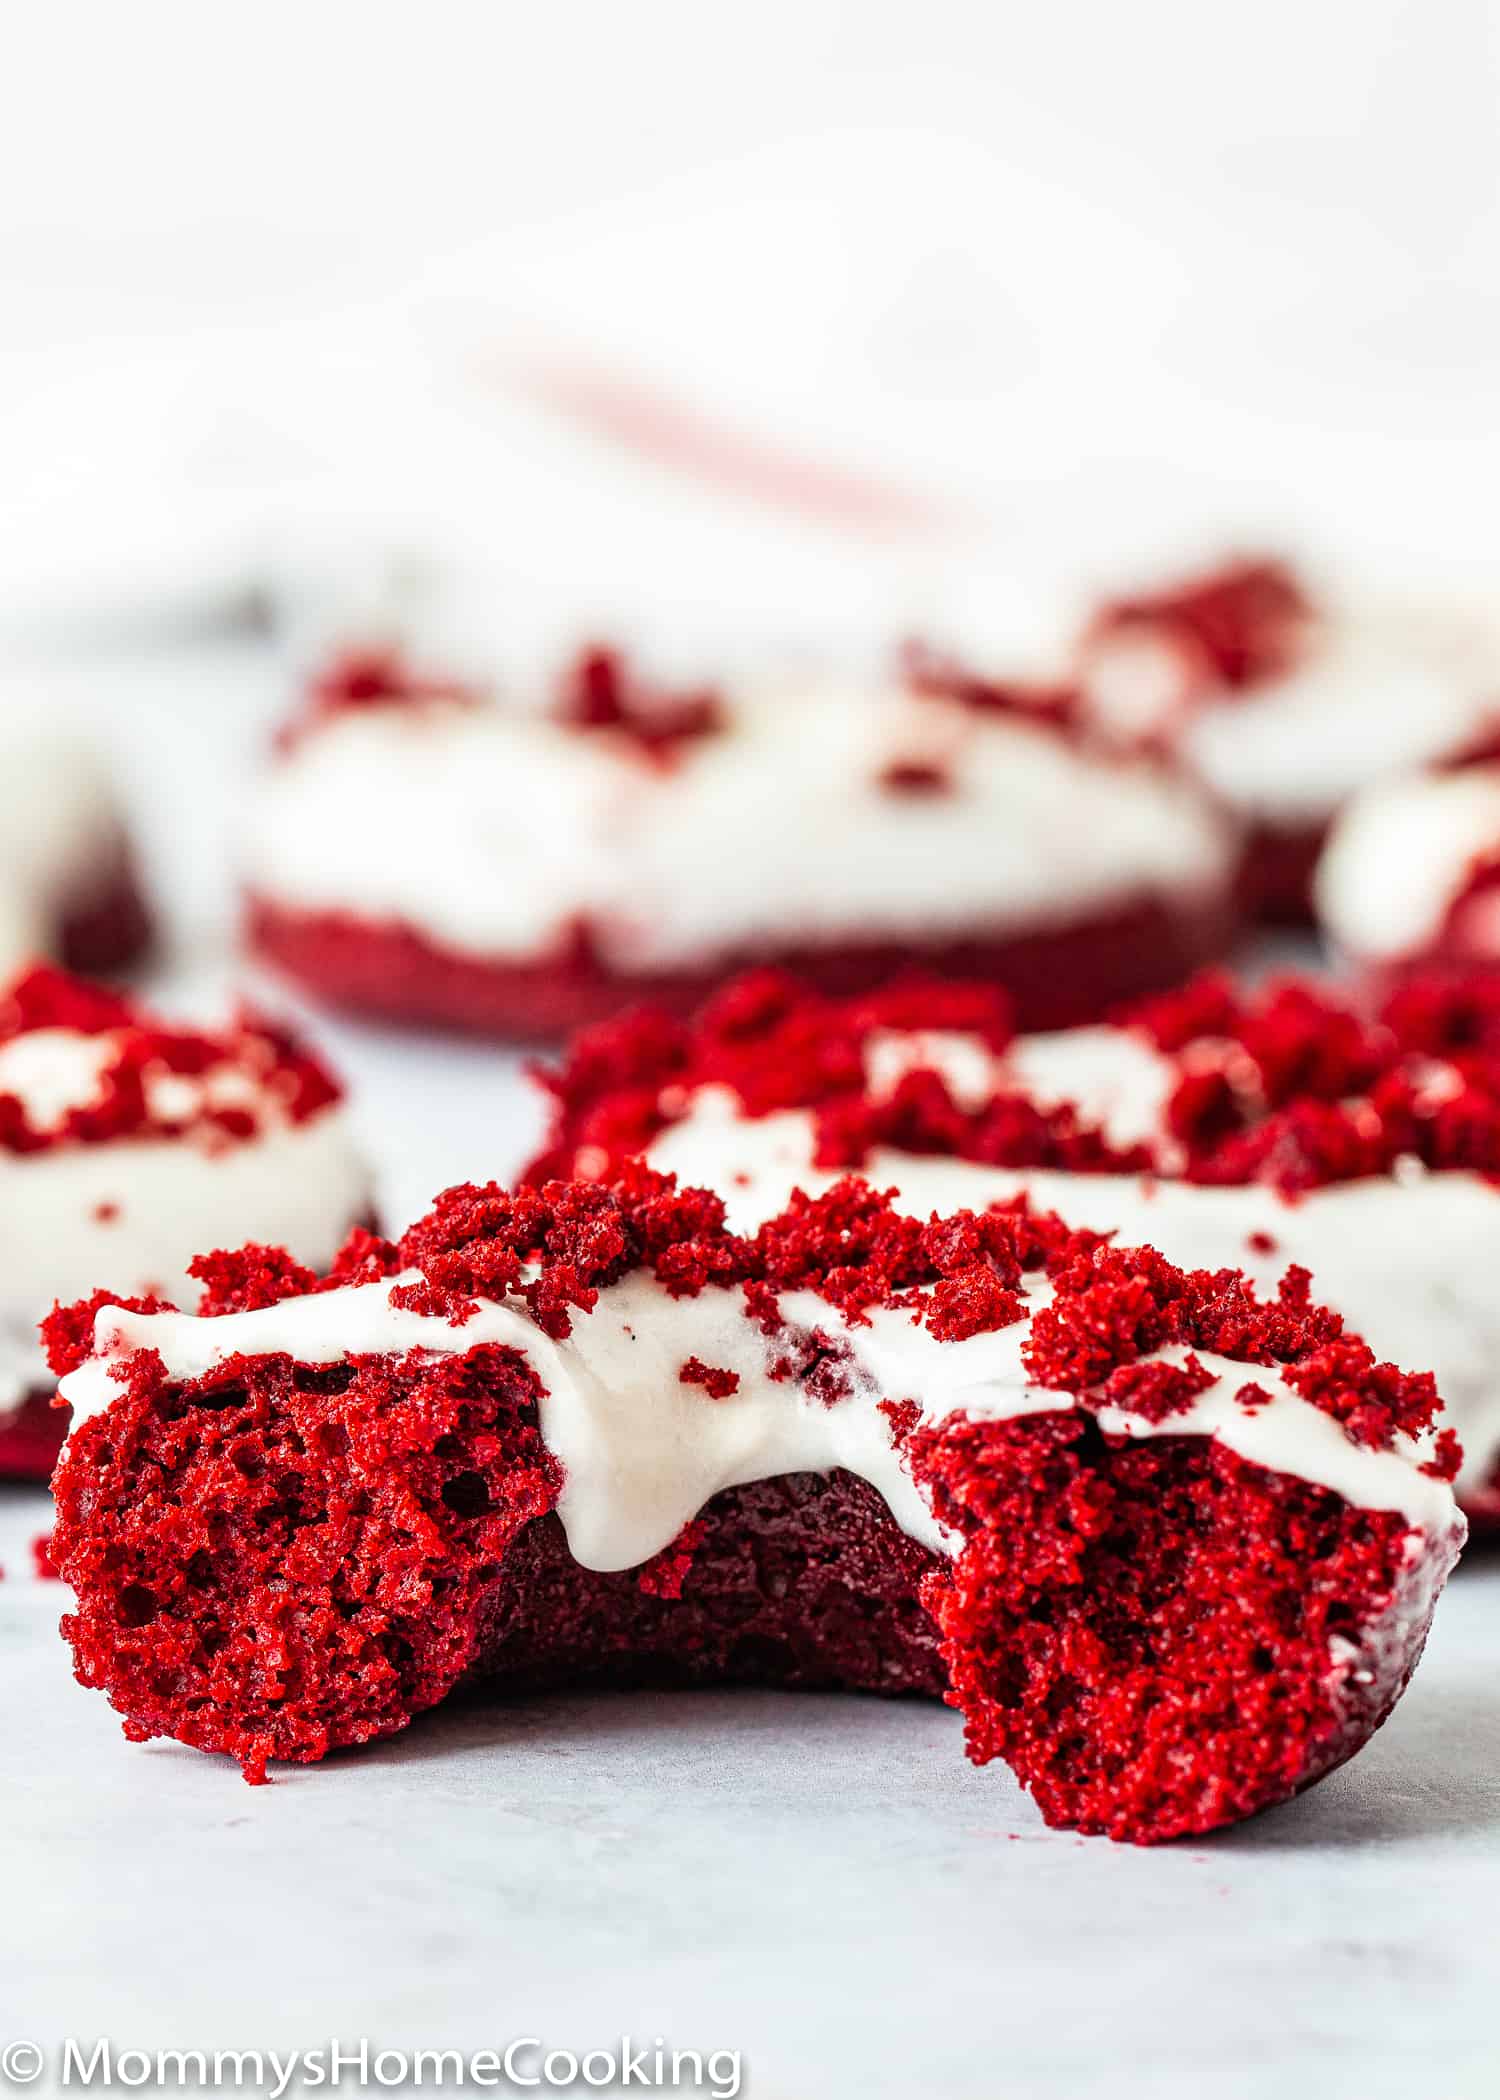 Eggless Red Velvet Donut showing the fluffy texture